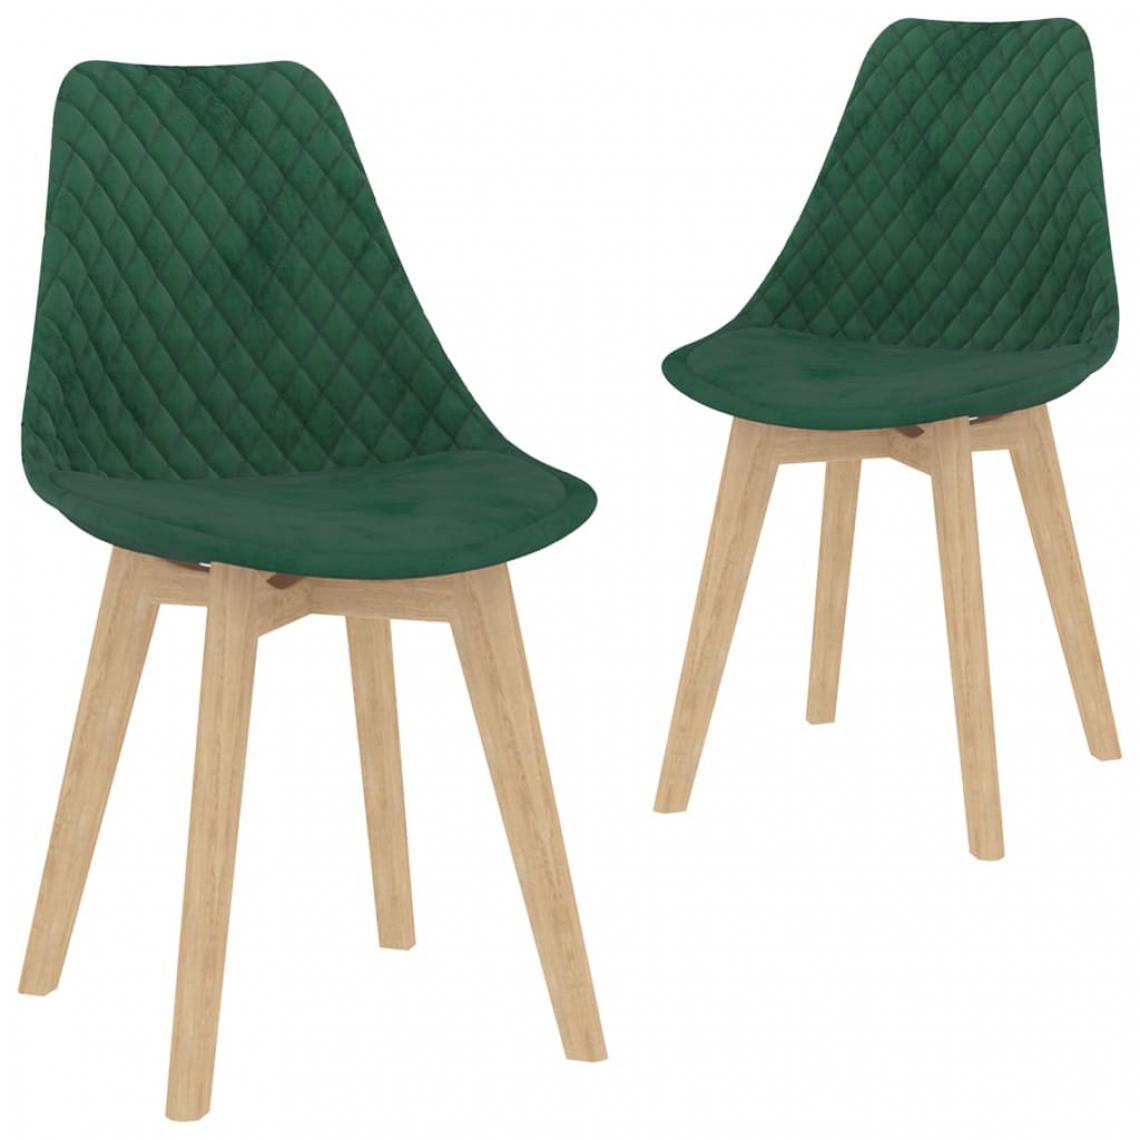 Icaverne - Contemporain Fauteuils et chaises Bandar Seri Begawan Chaises de salle à manger 2 pcs Vert foncé Velours - Chaises